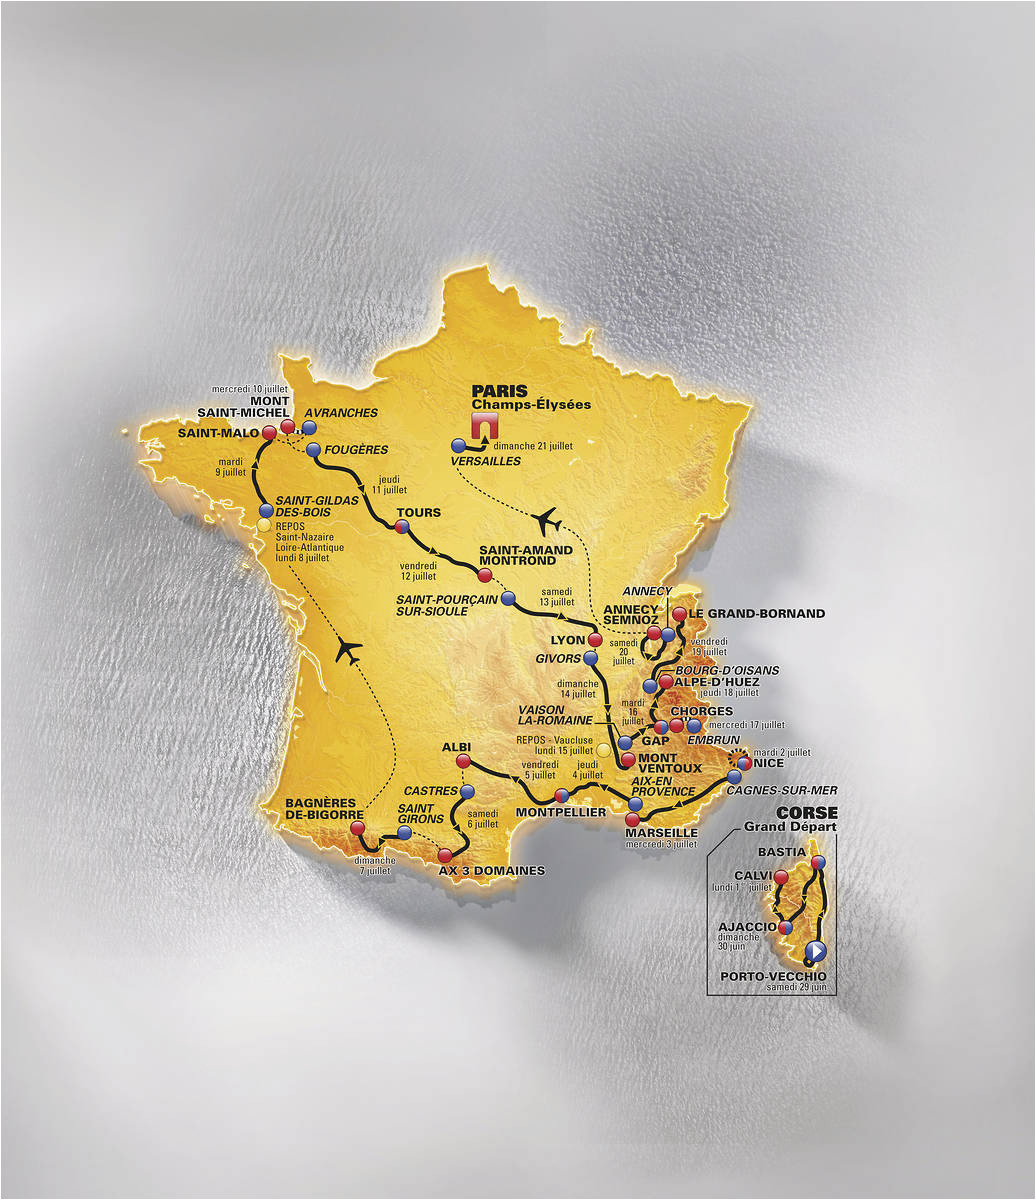 Tour De France Route 2013 Map tour De France 2013